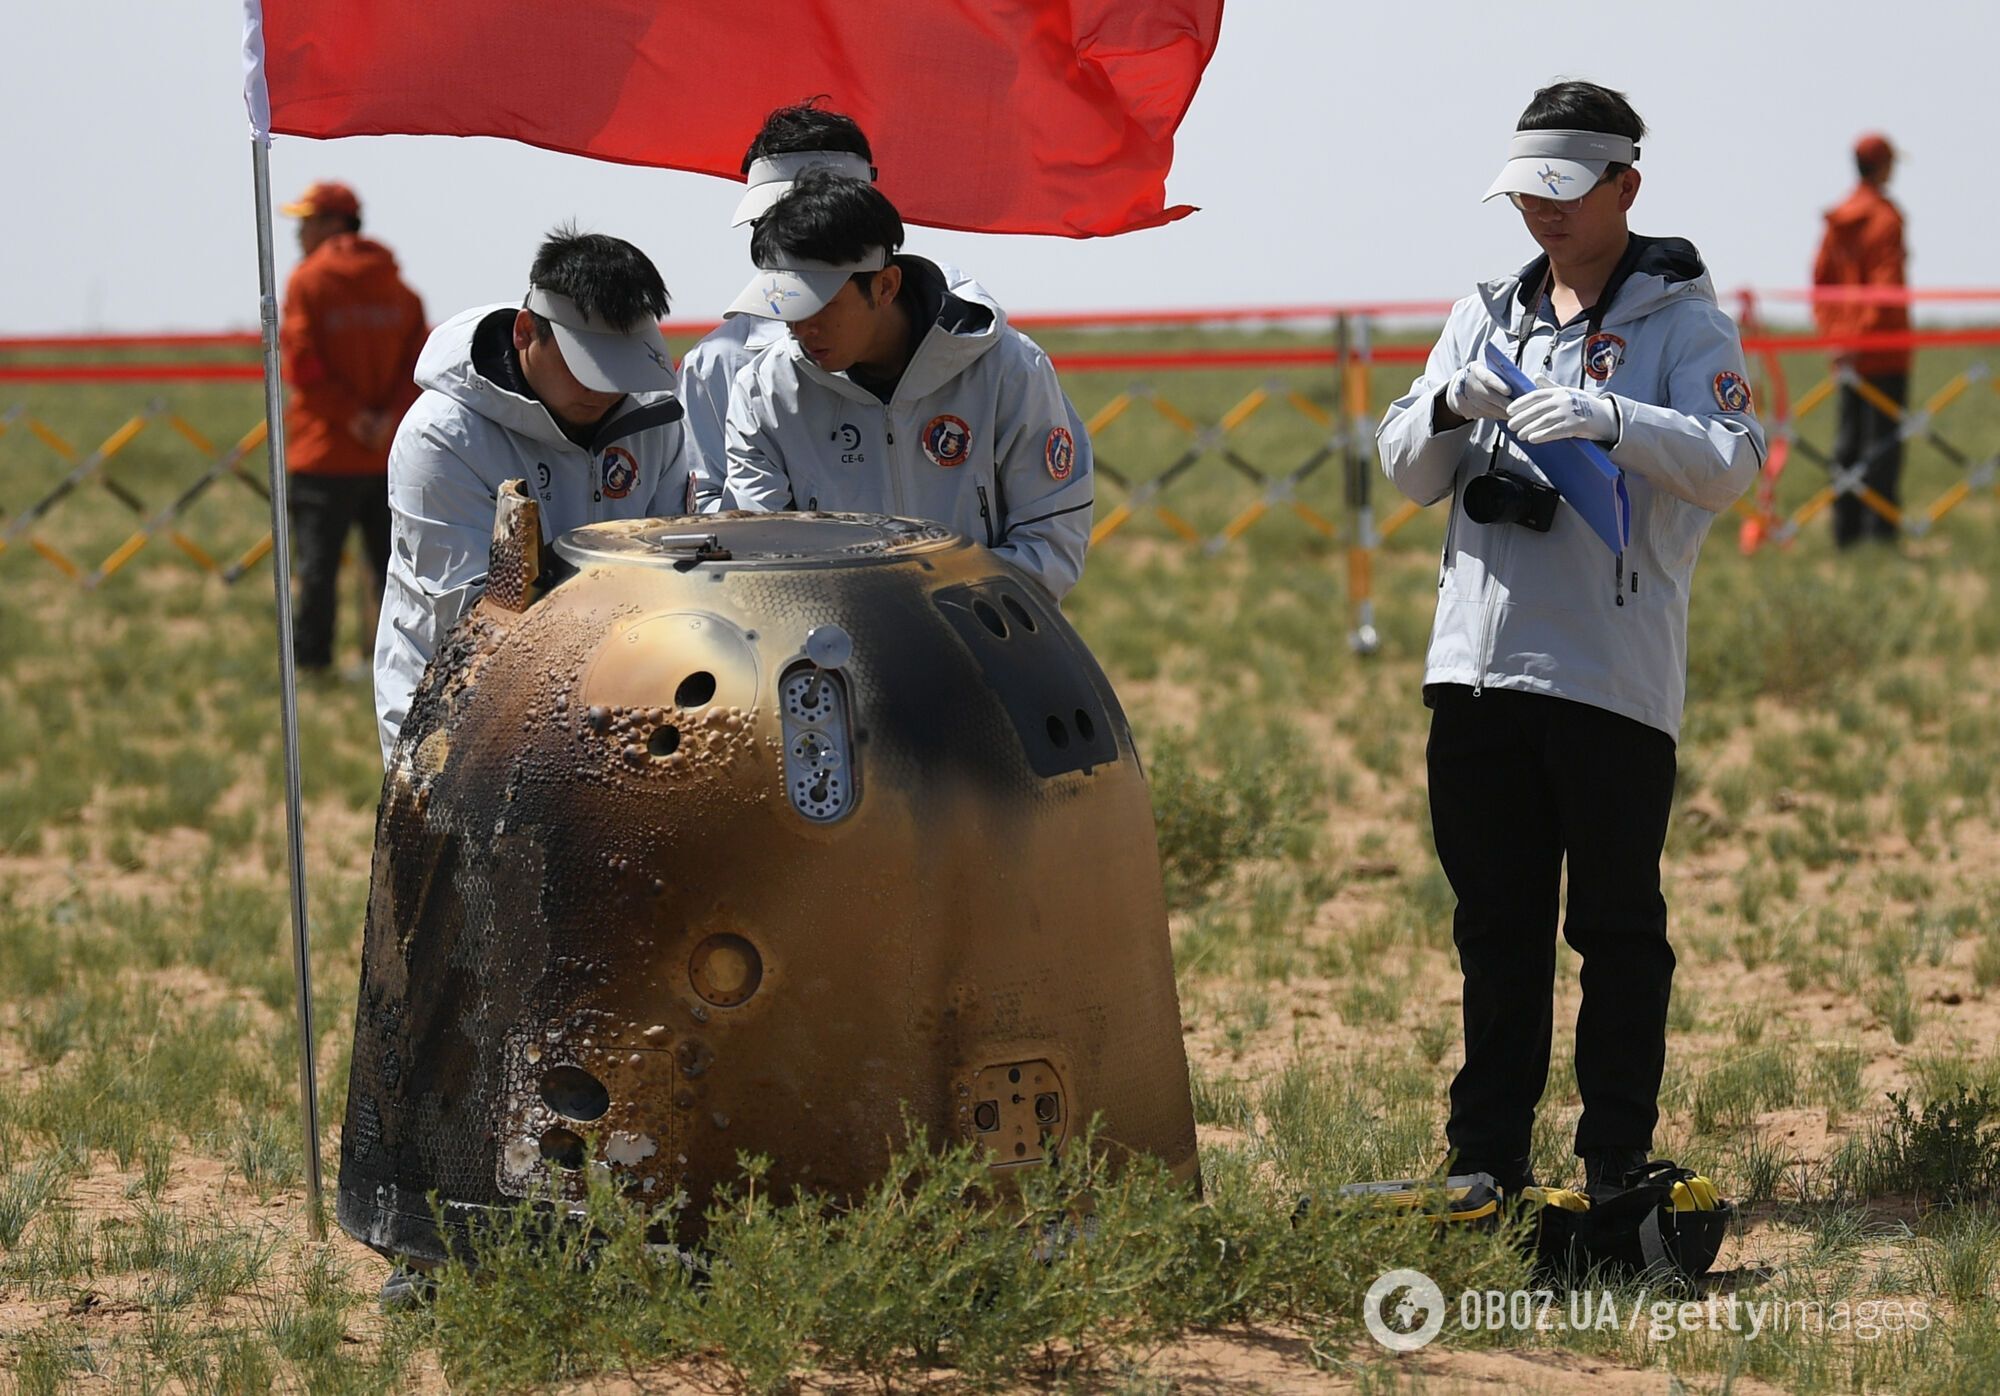 Китайский зонд вернулся на Землю с первыми в истории образцами с обратной стороны Луны. 10 ярких фото